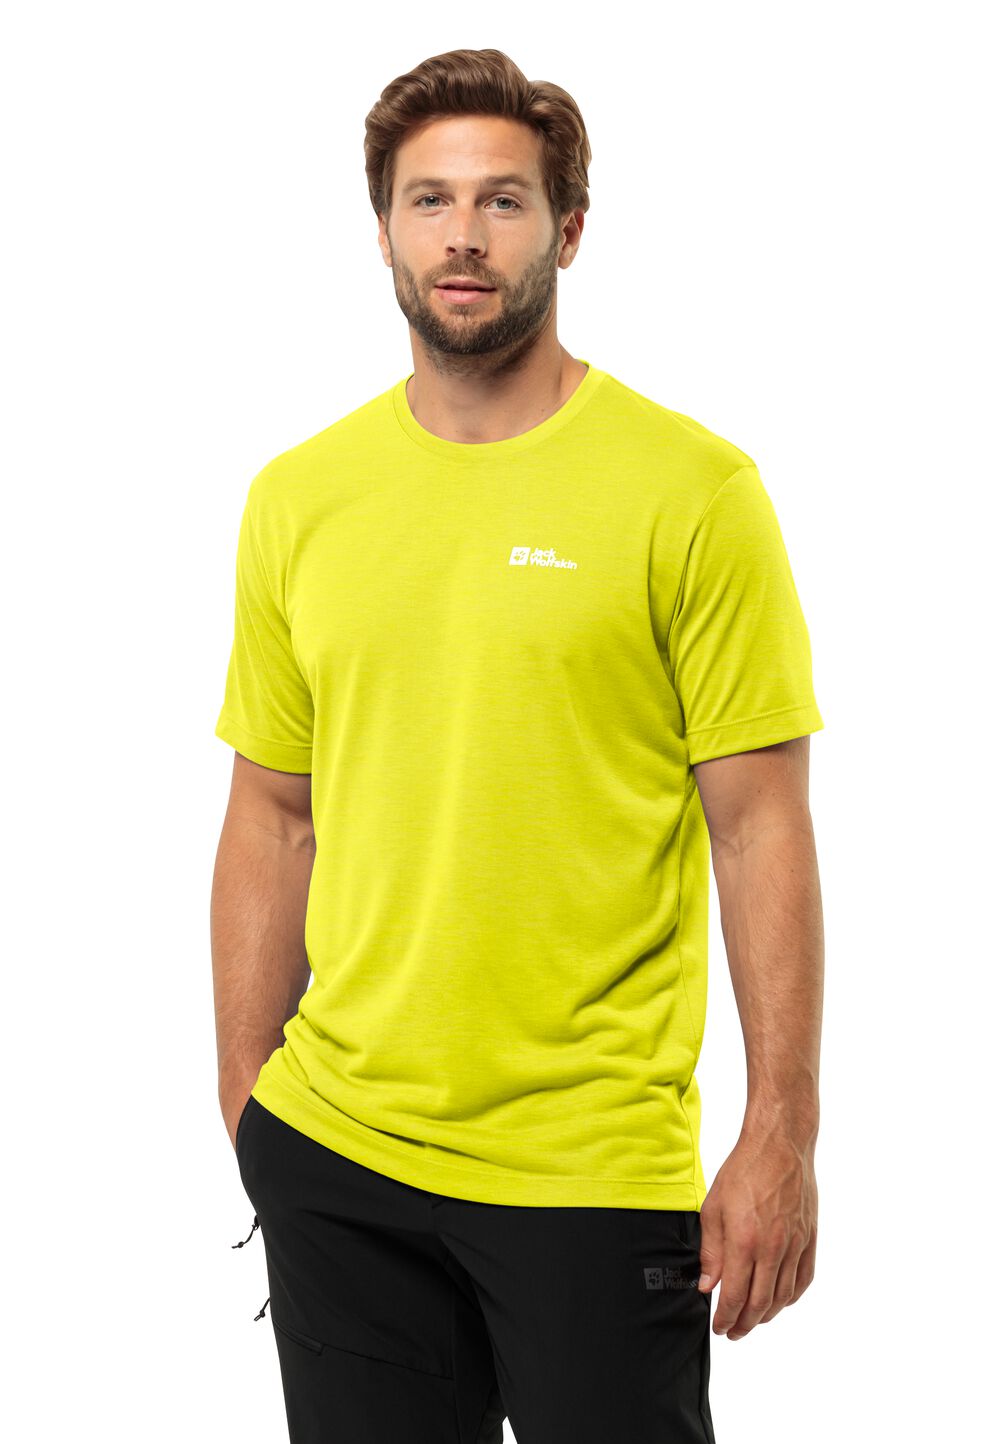 Jack Wolfskin Vonnan S S T-Shirt Men Functioneel shirt Heren M oranje firefly